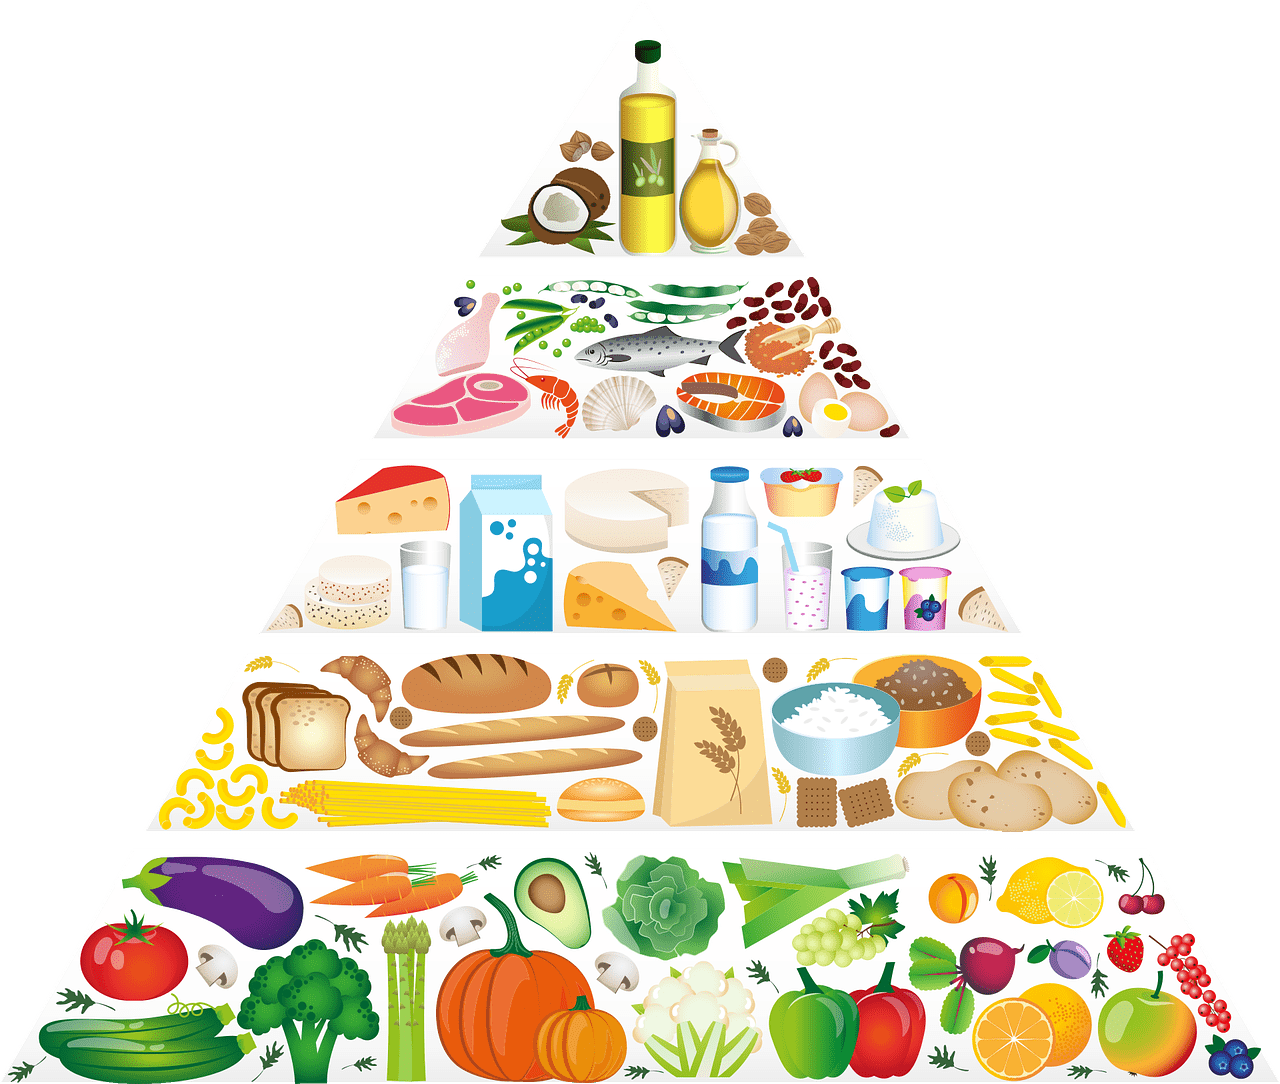 You are currently viewing Ciências da Natureza – Diferentes hábitos alimentares nas sociedades: Sou o que consumo.